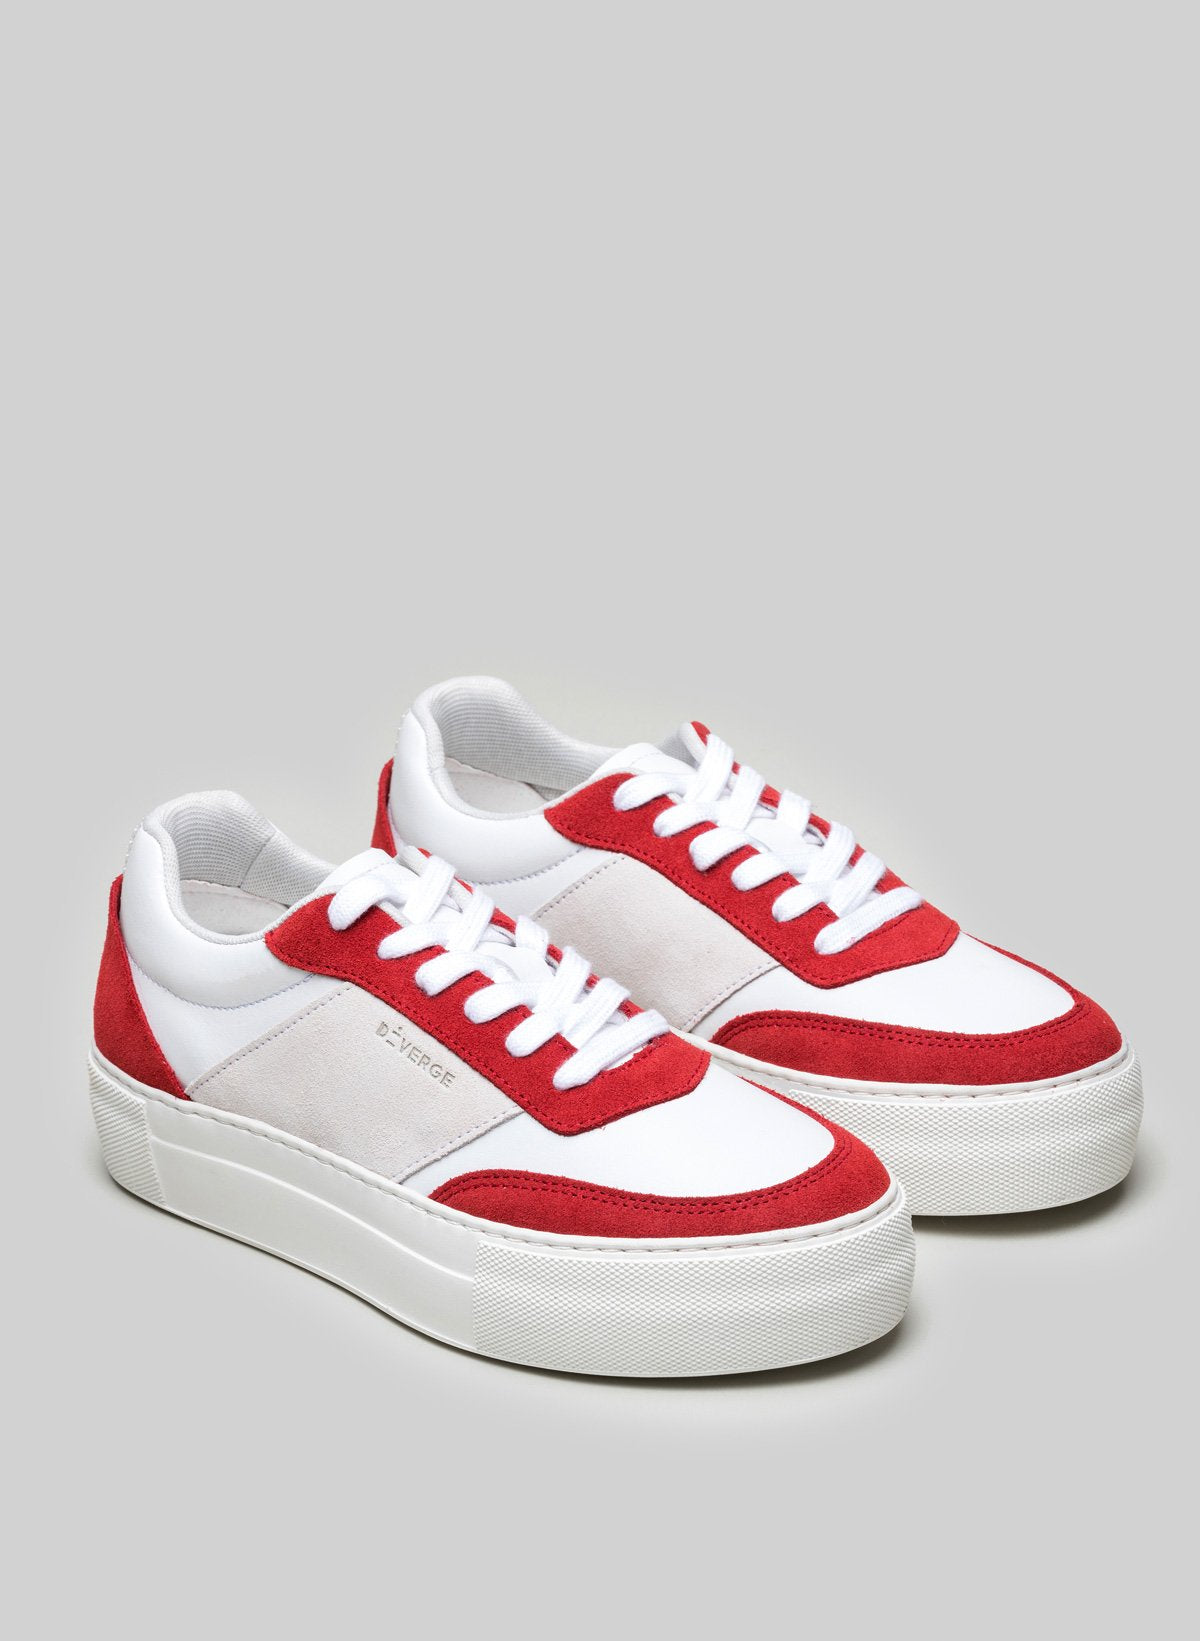 Diverge rojo, blanco y gris custom low top sneakers.